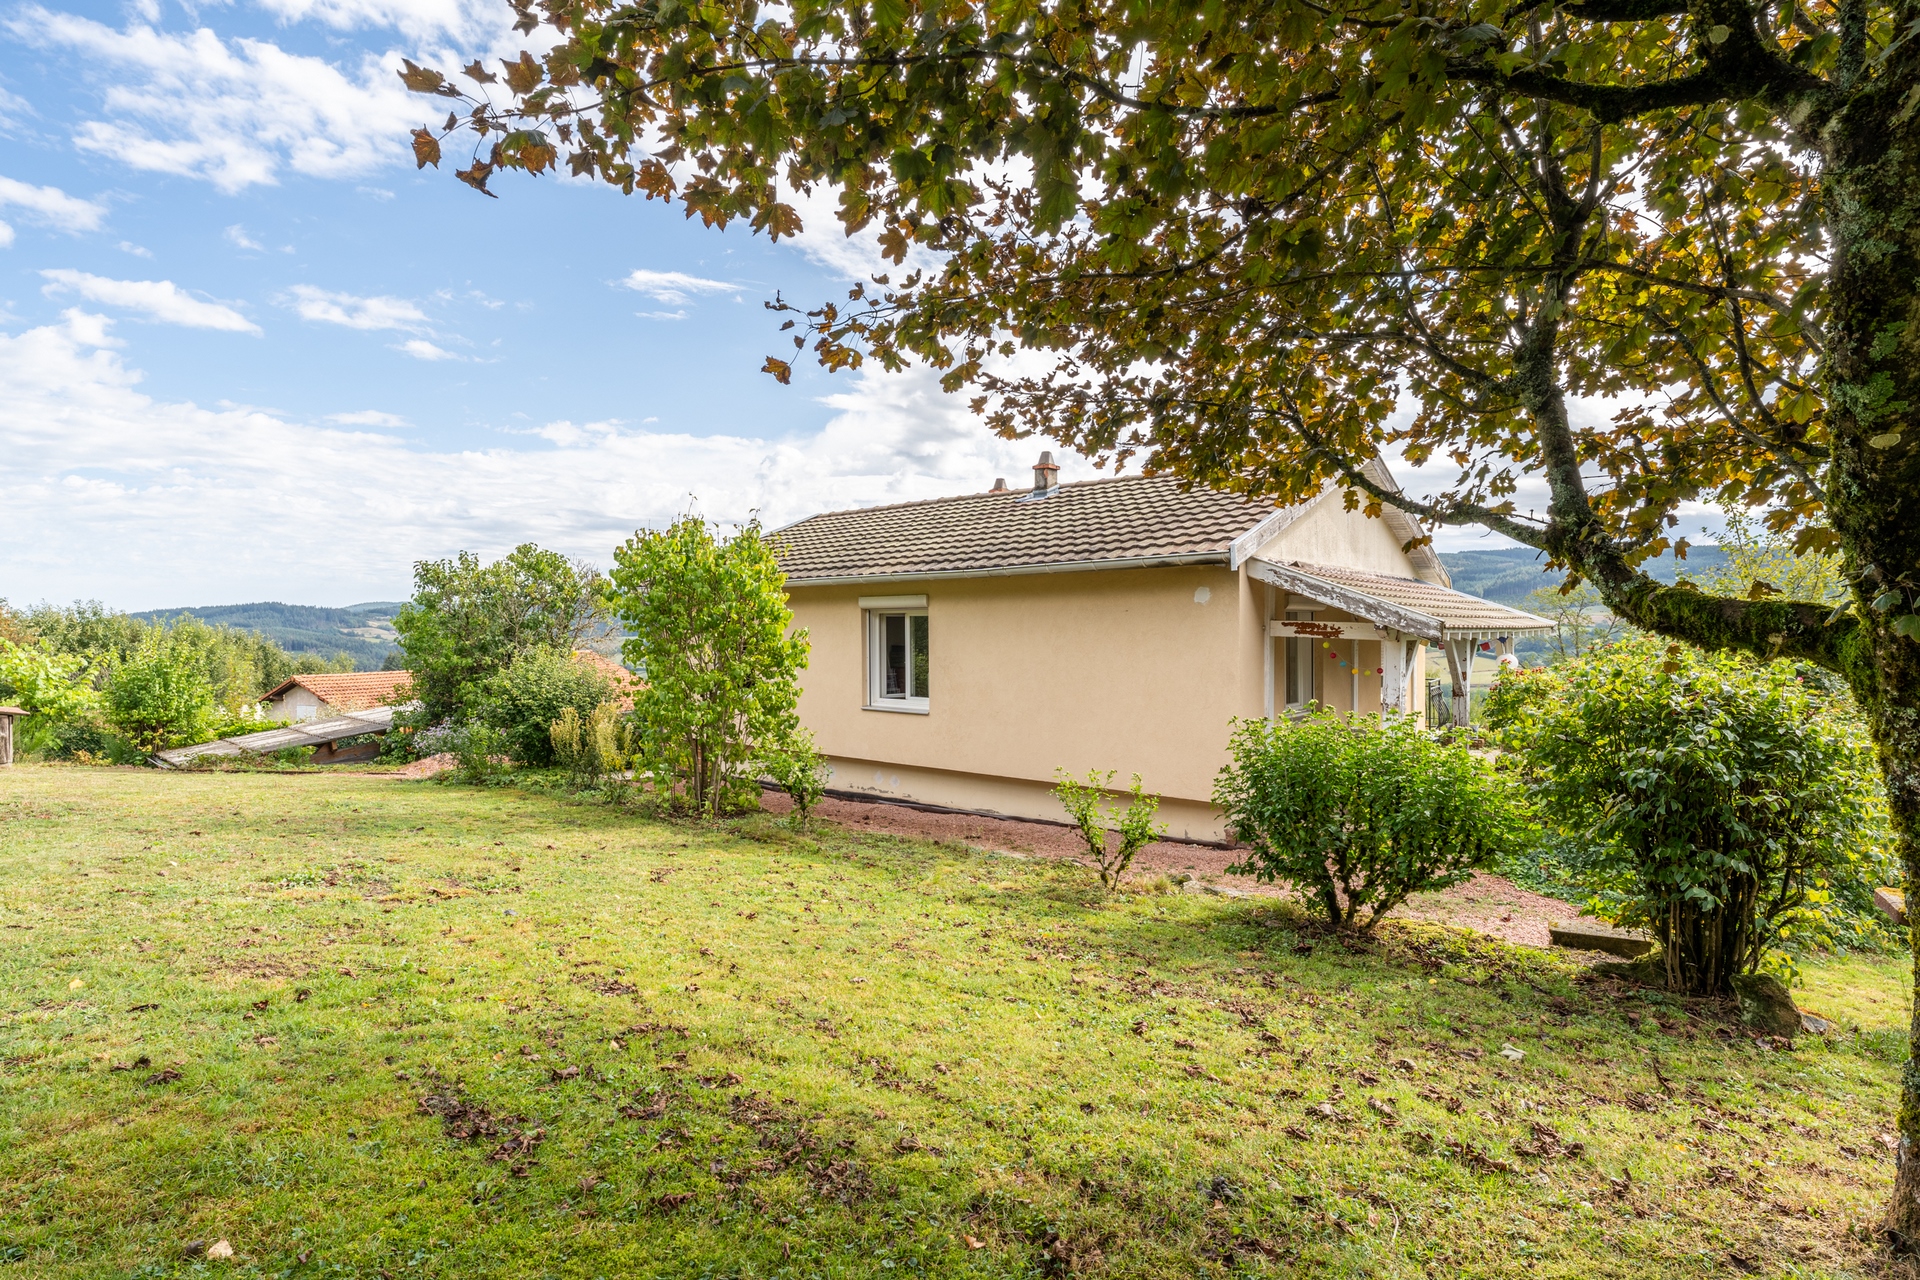 Maison avec vue imprenable sur les collines du Beaujolais vert